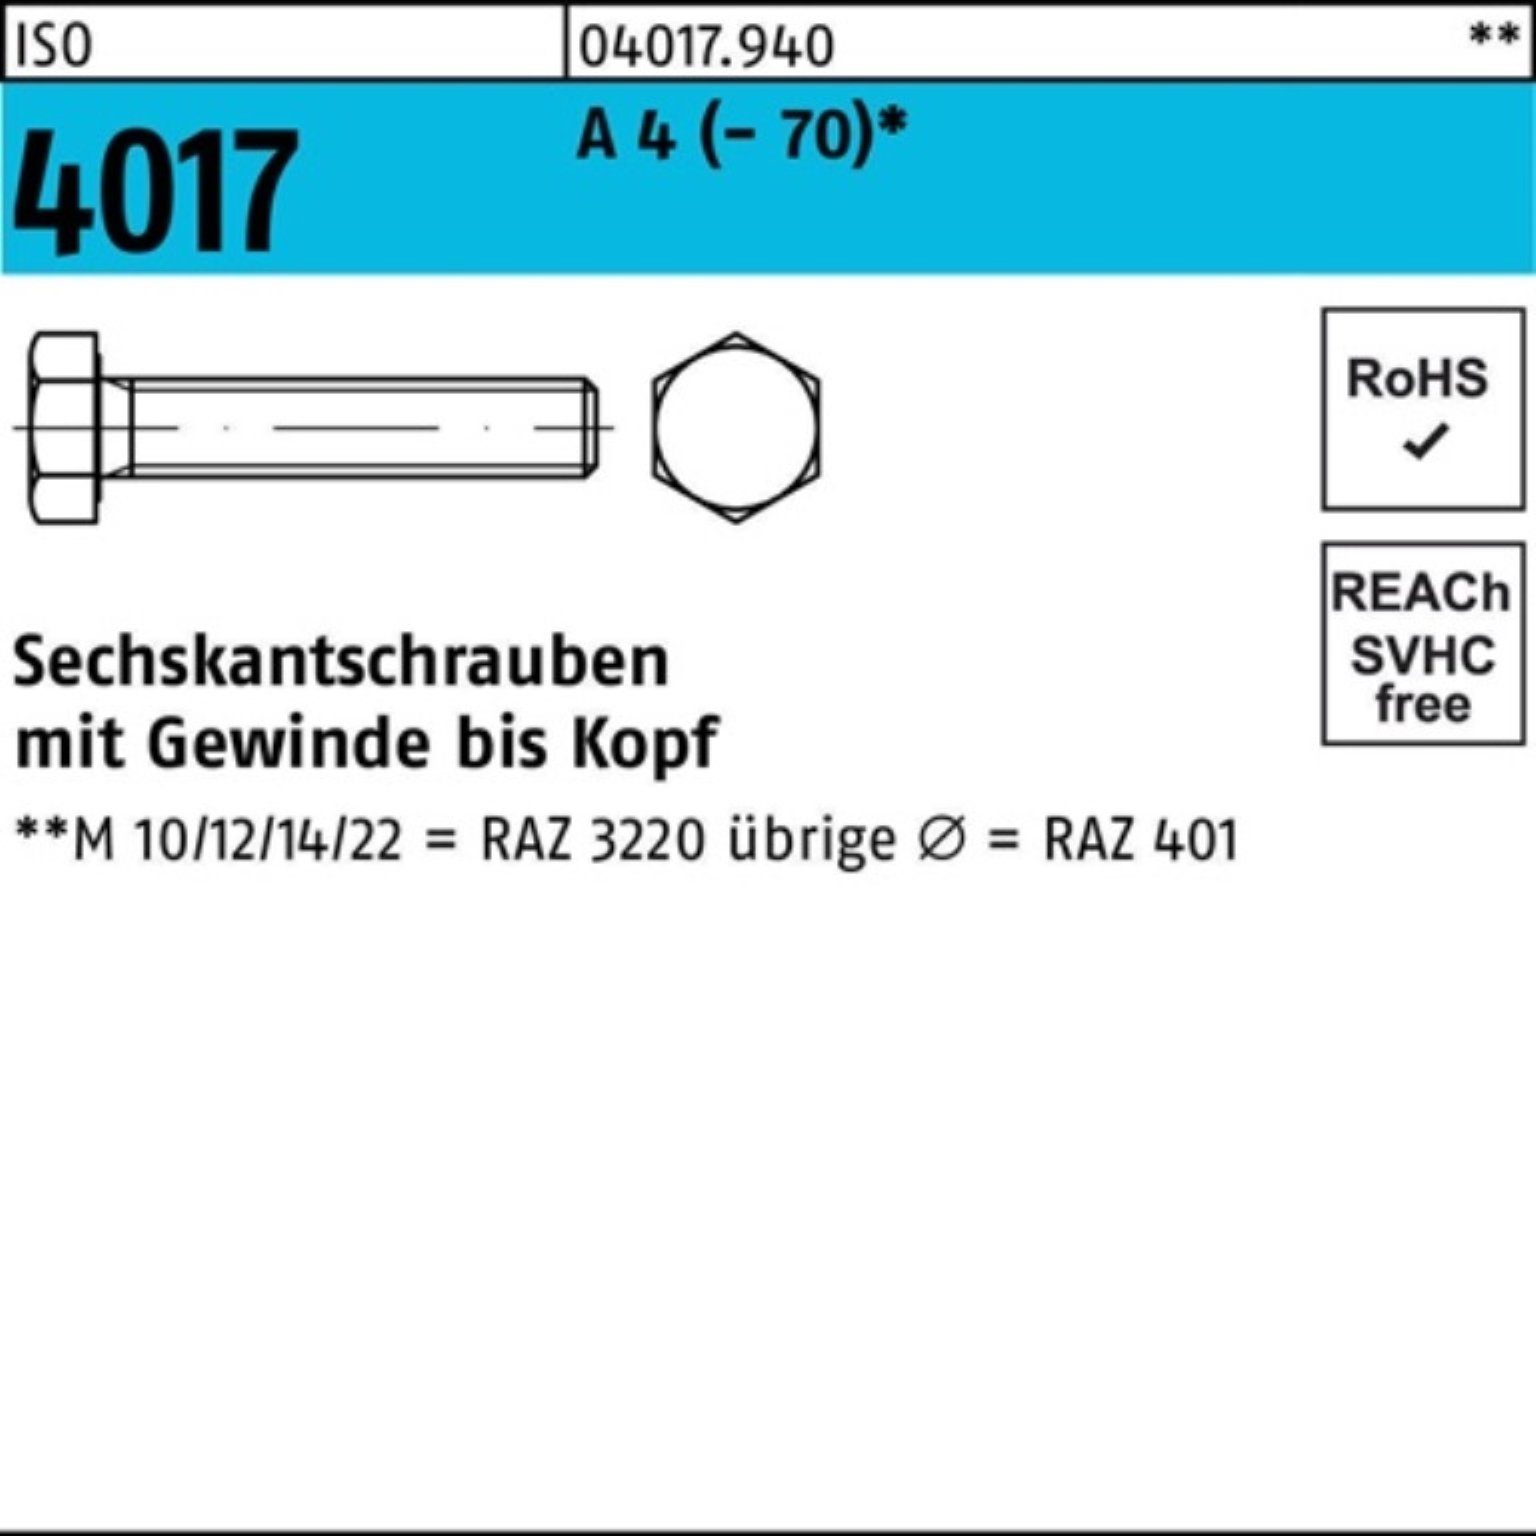 Bufab Sechskantschraube 100er (70) Stück Pack VG 4017 35 A Sechskantschraube M14x 50 4 ISO